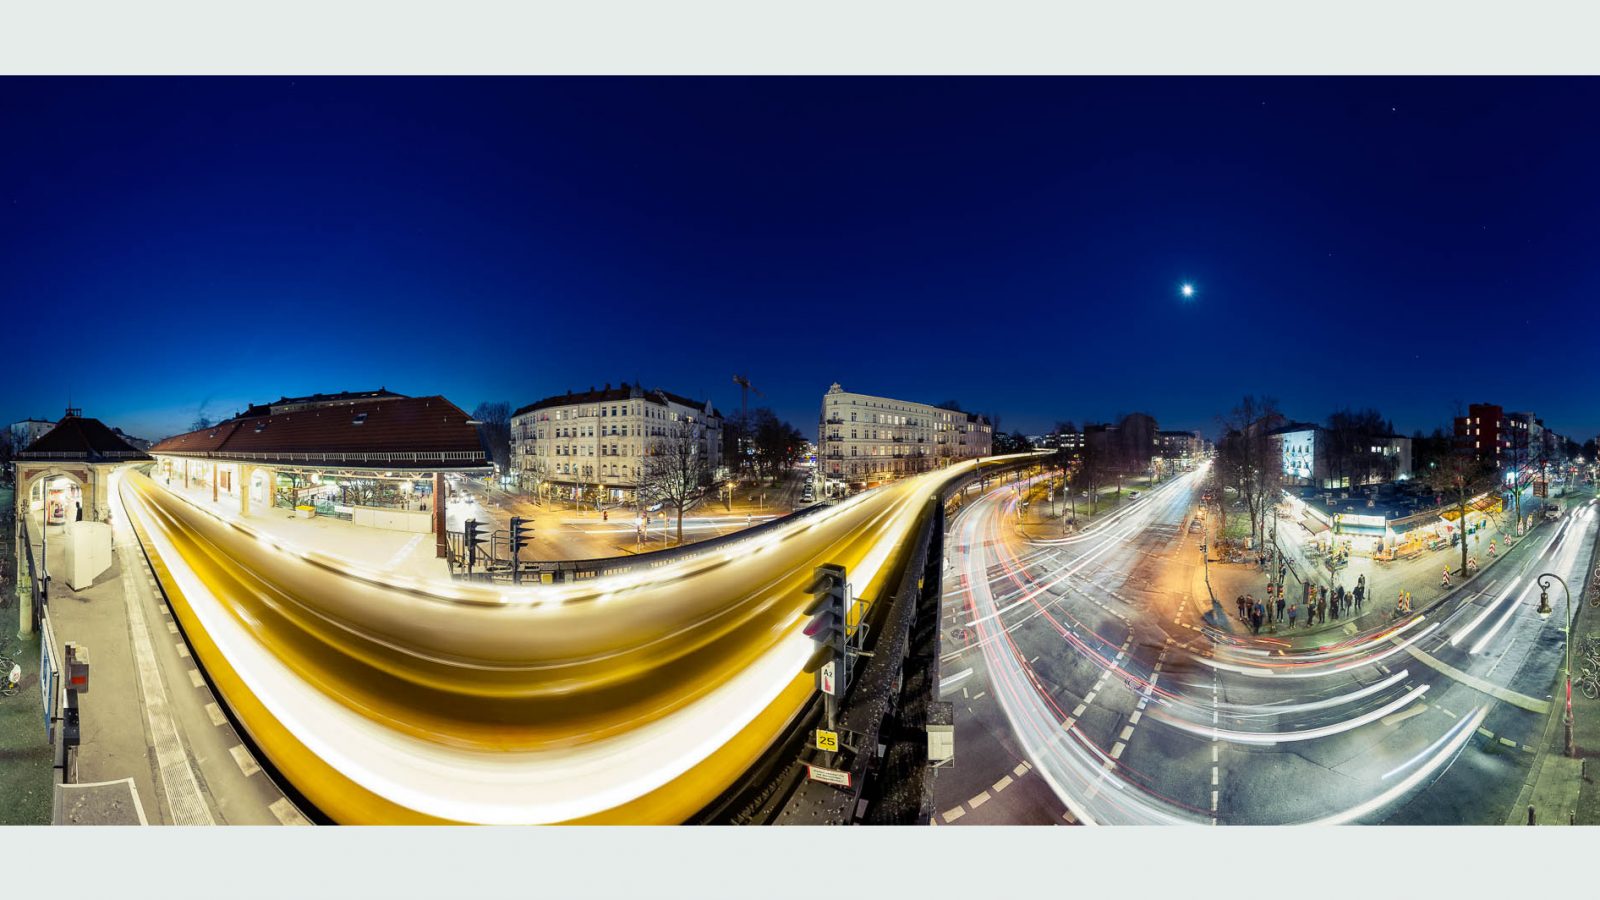 EXPOSE: Panorama Fotografie als differenzierende Bildsprache auch für Transport & Logistik.